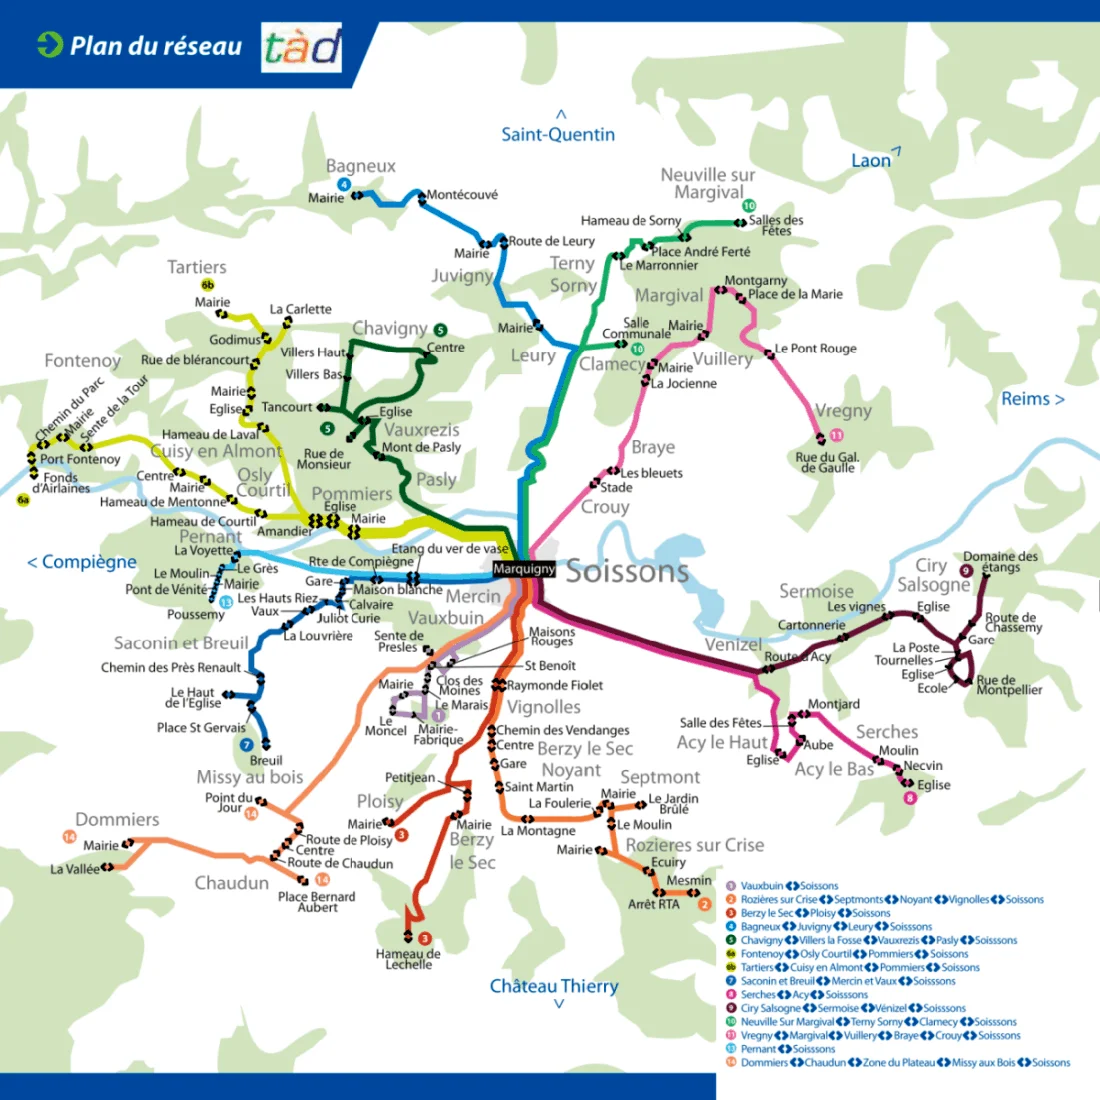 Plan du réseau TAD 2015-2016